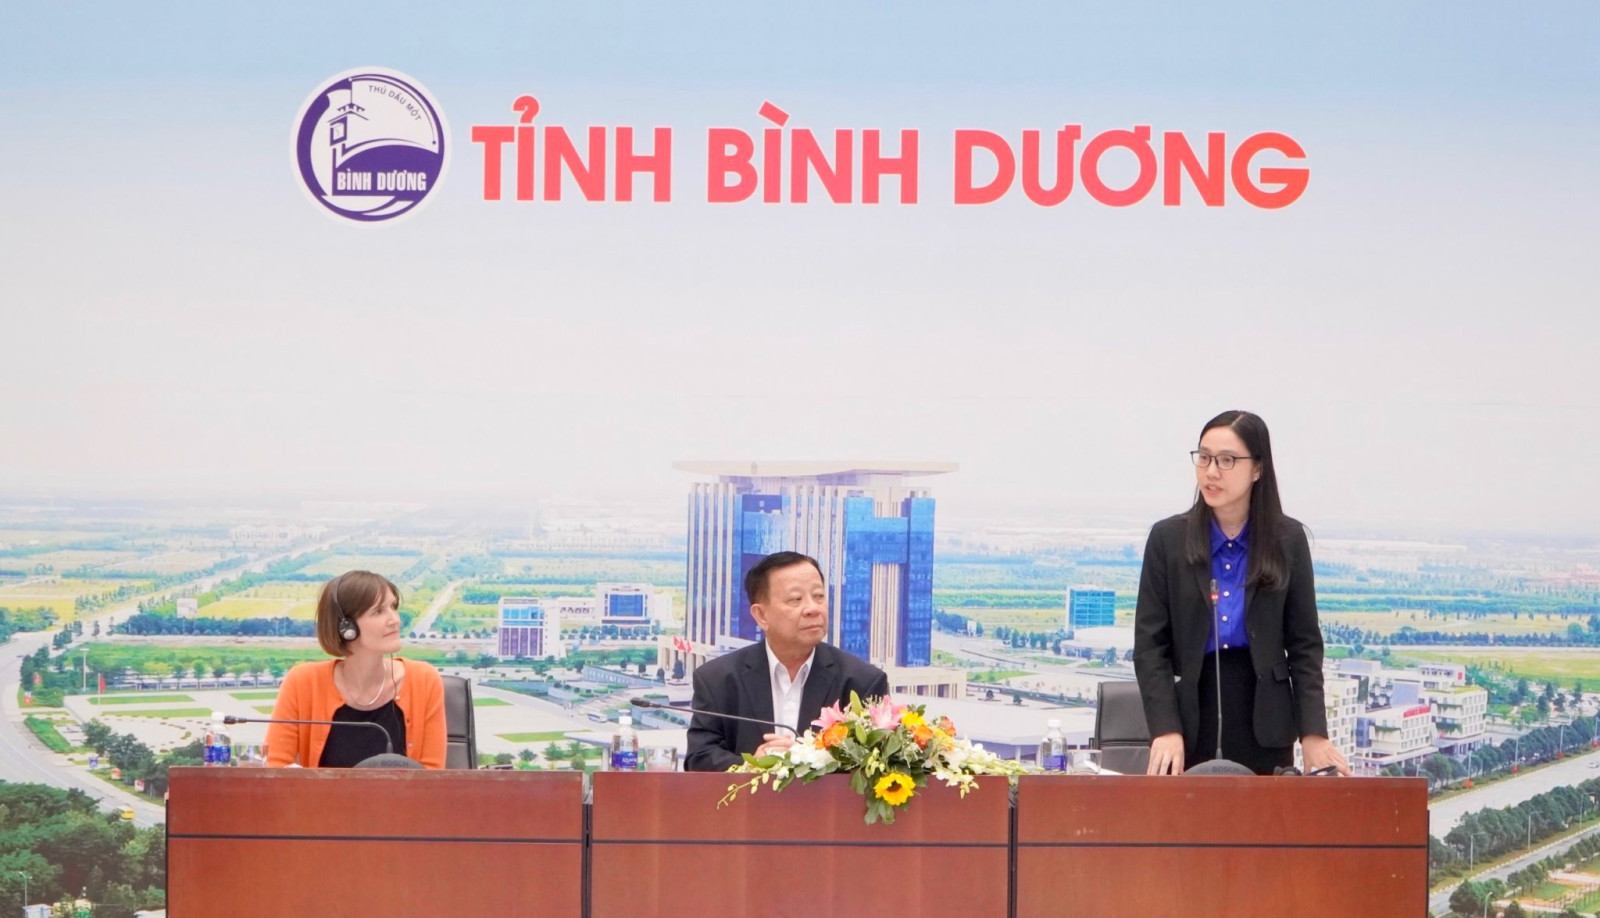 Đồng chí Hà Thanh, Phó Giám đốc Sở Ngoại vụ thông tin với đoàn về tình hình phát triển kinh tế - xã hội, thu hút đầu tư của tỉnh Bình Dương.